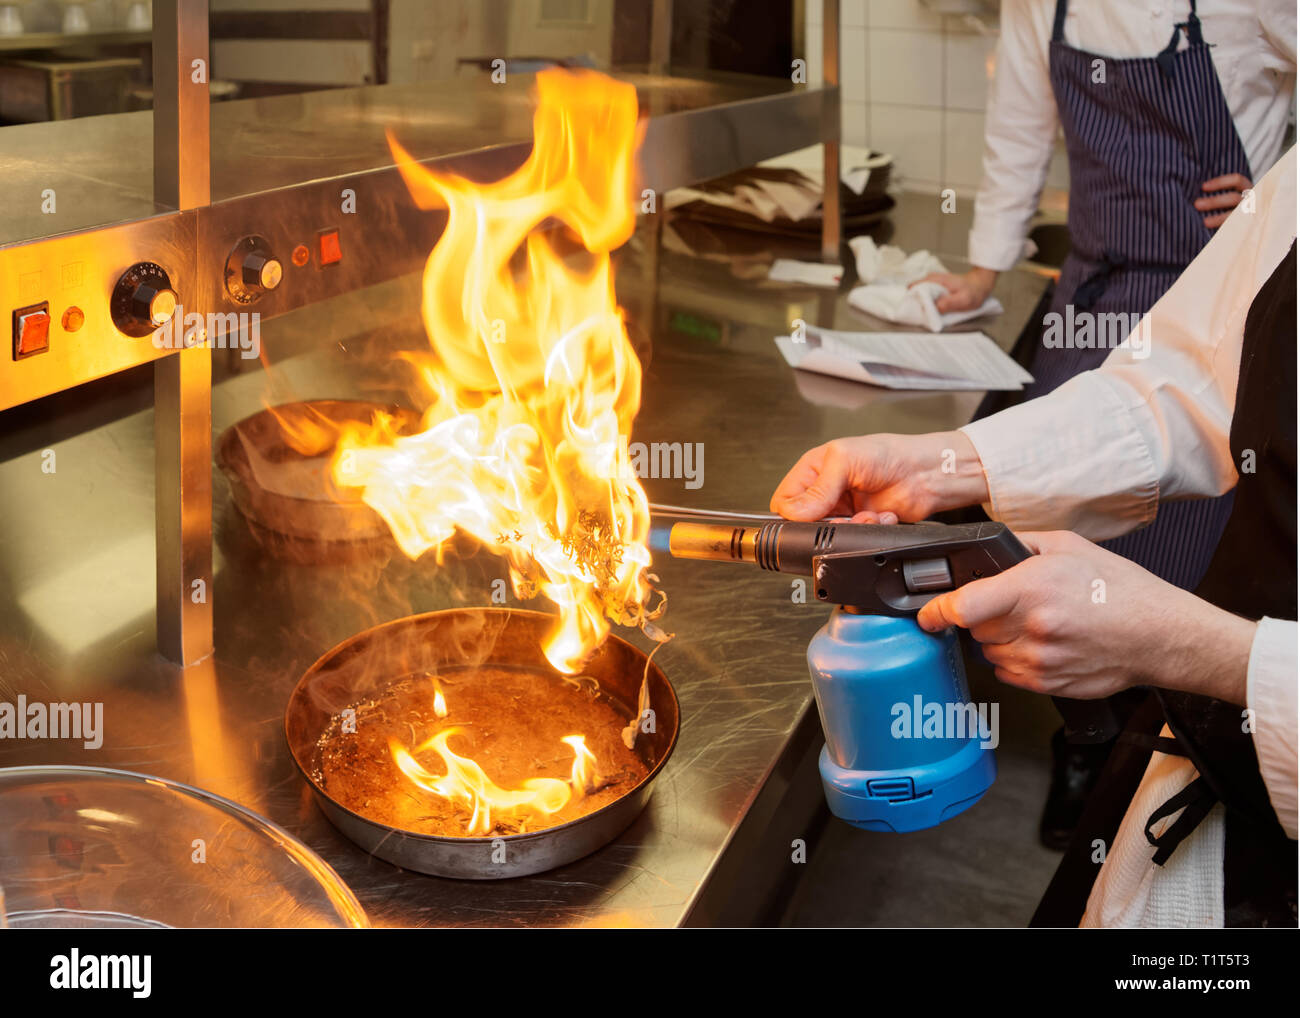 Koch ist das Verbrennen aromatische Kräuter ein Gericht zu rauchen,  kommerzielle Küche Stockfotografie - Alamy